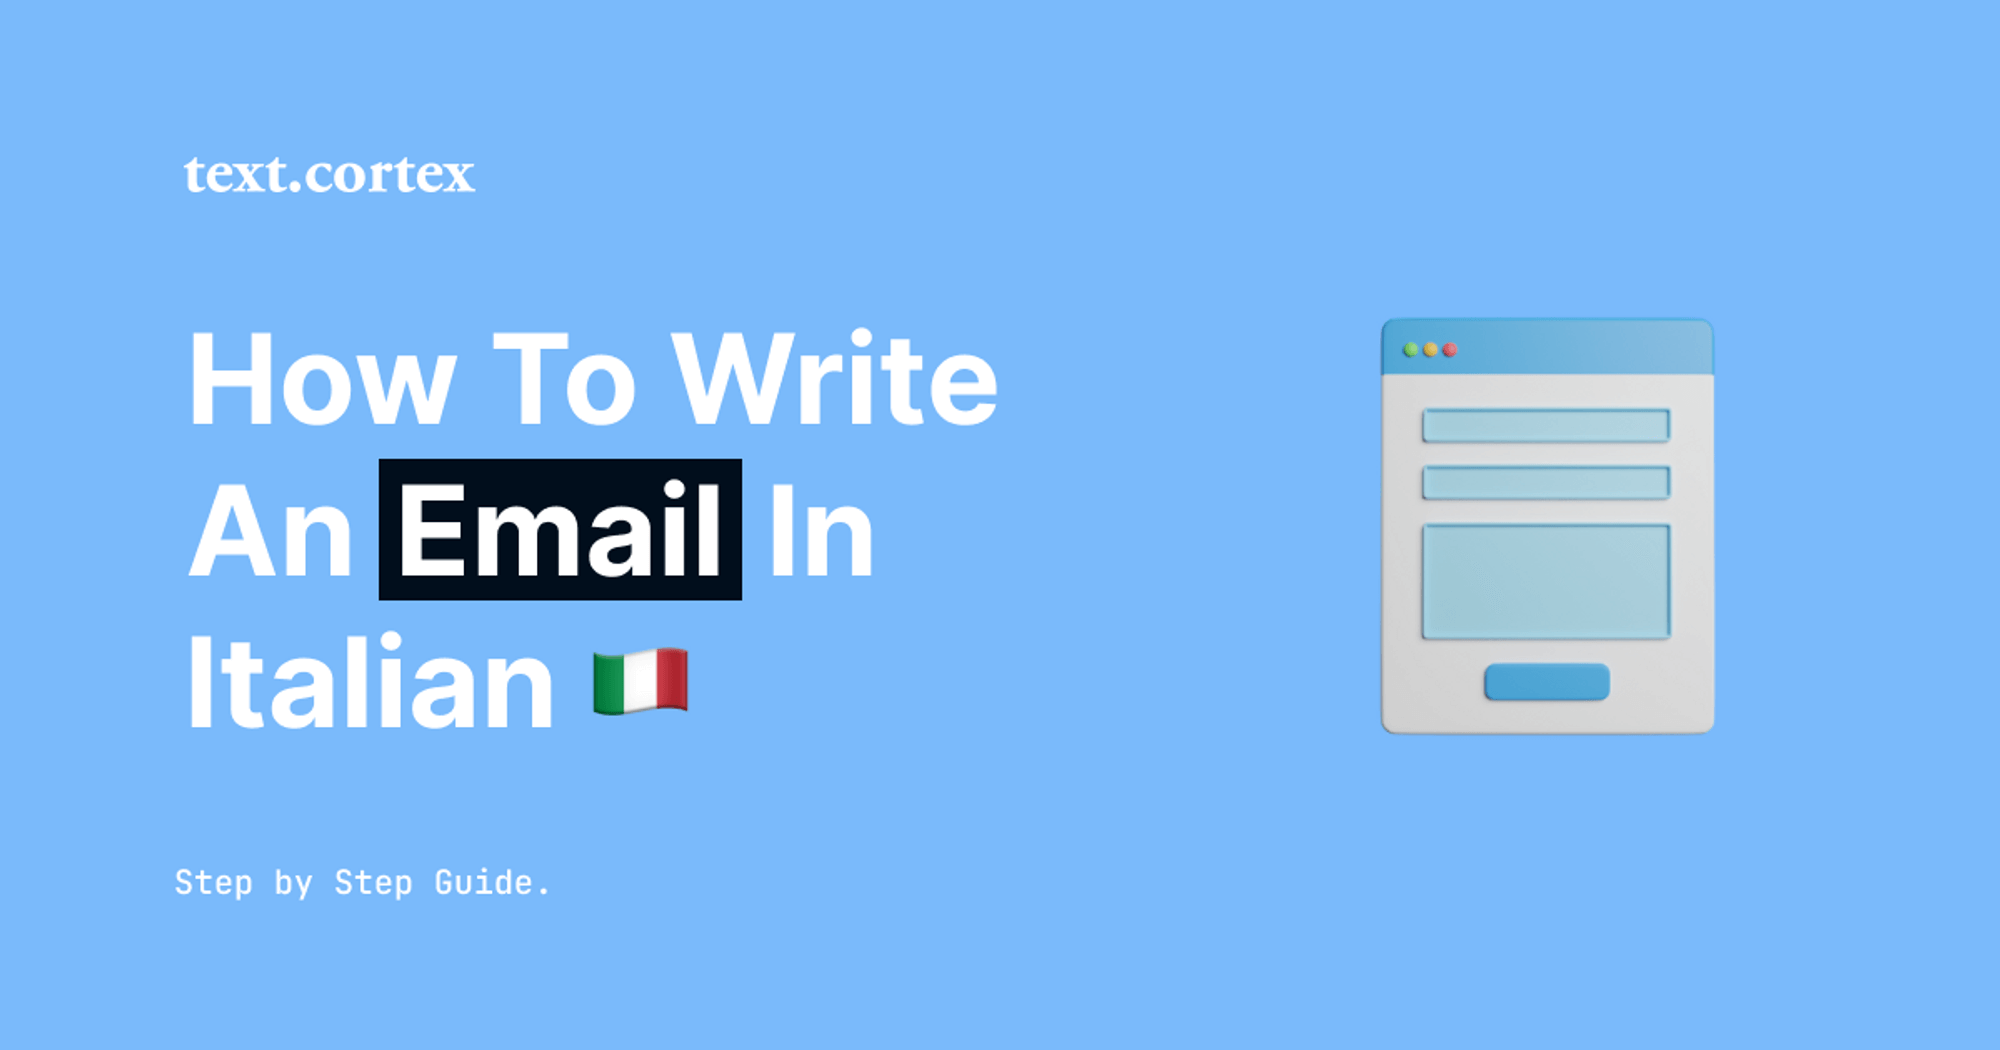 Een e-mail schrijven in het Italiaans - stap-voor-stap handleiding